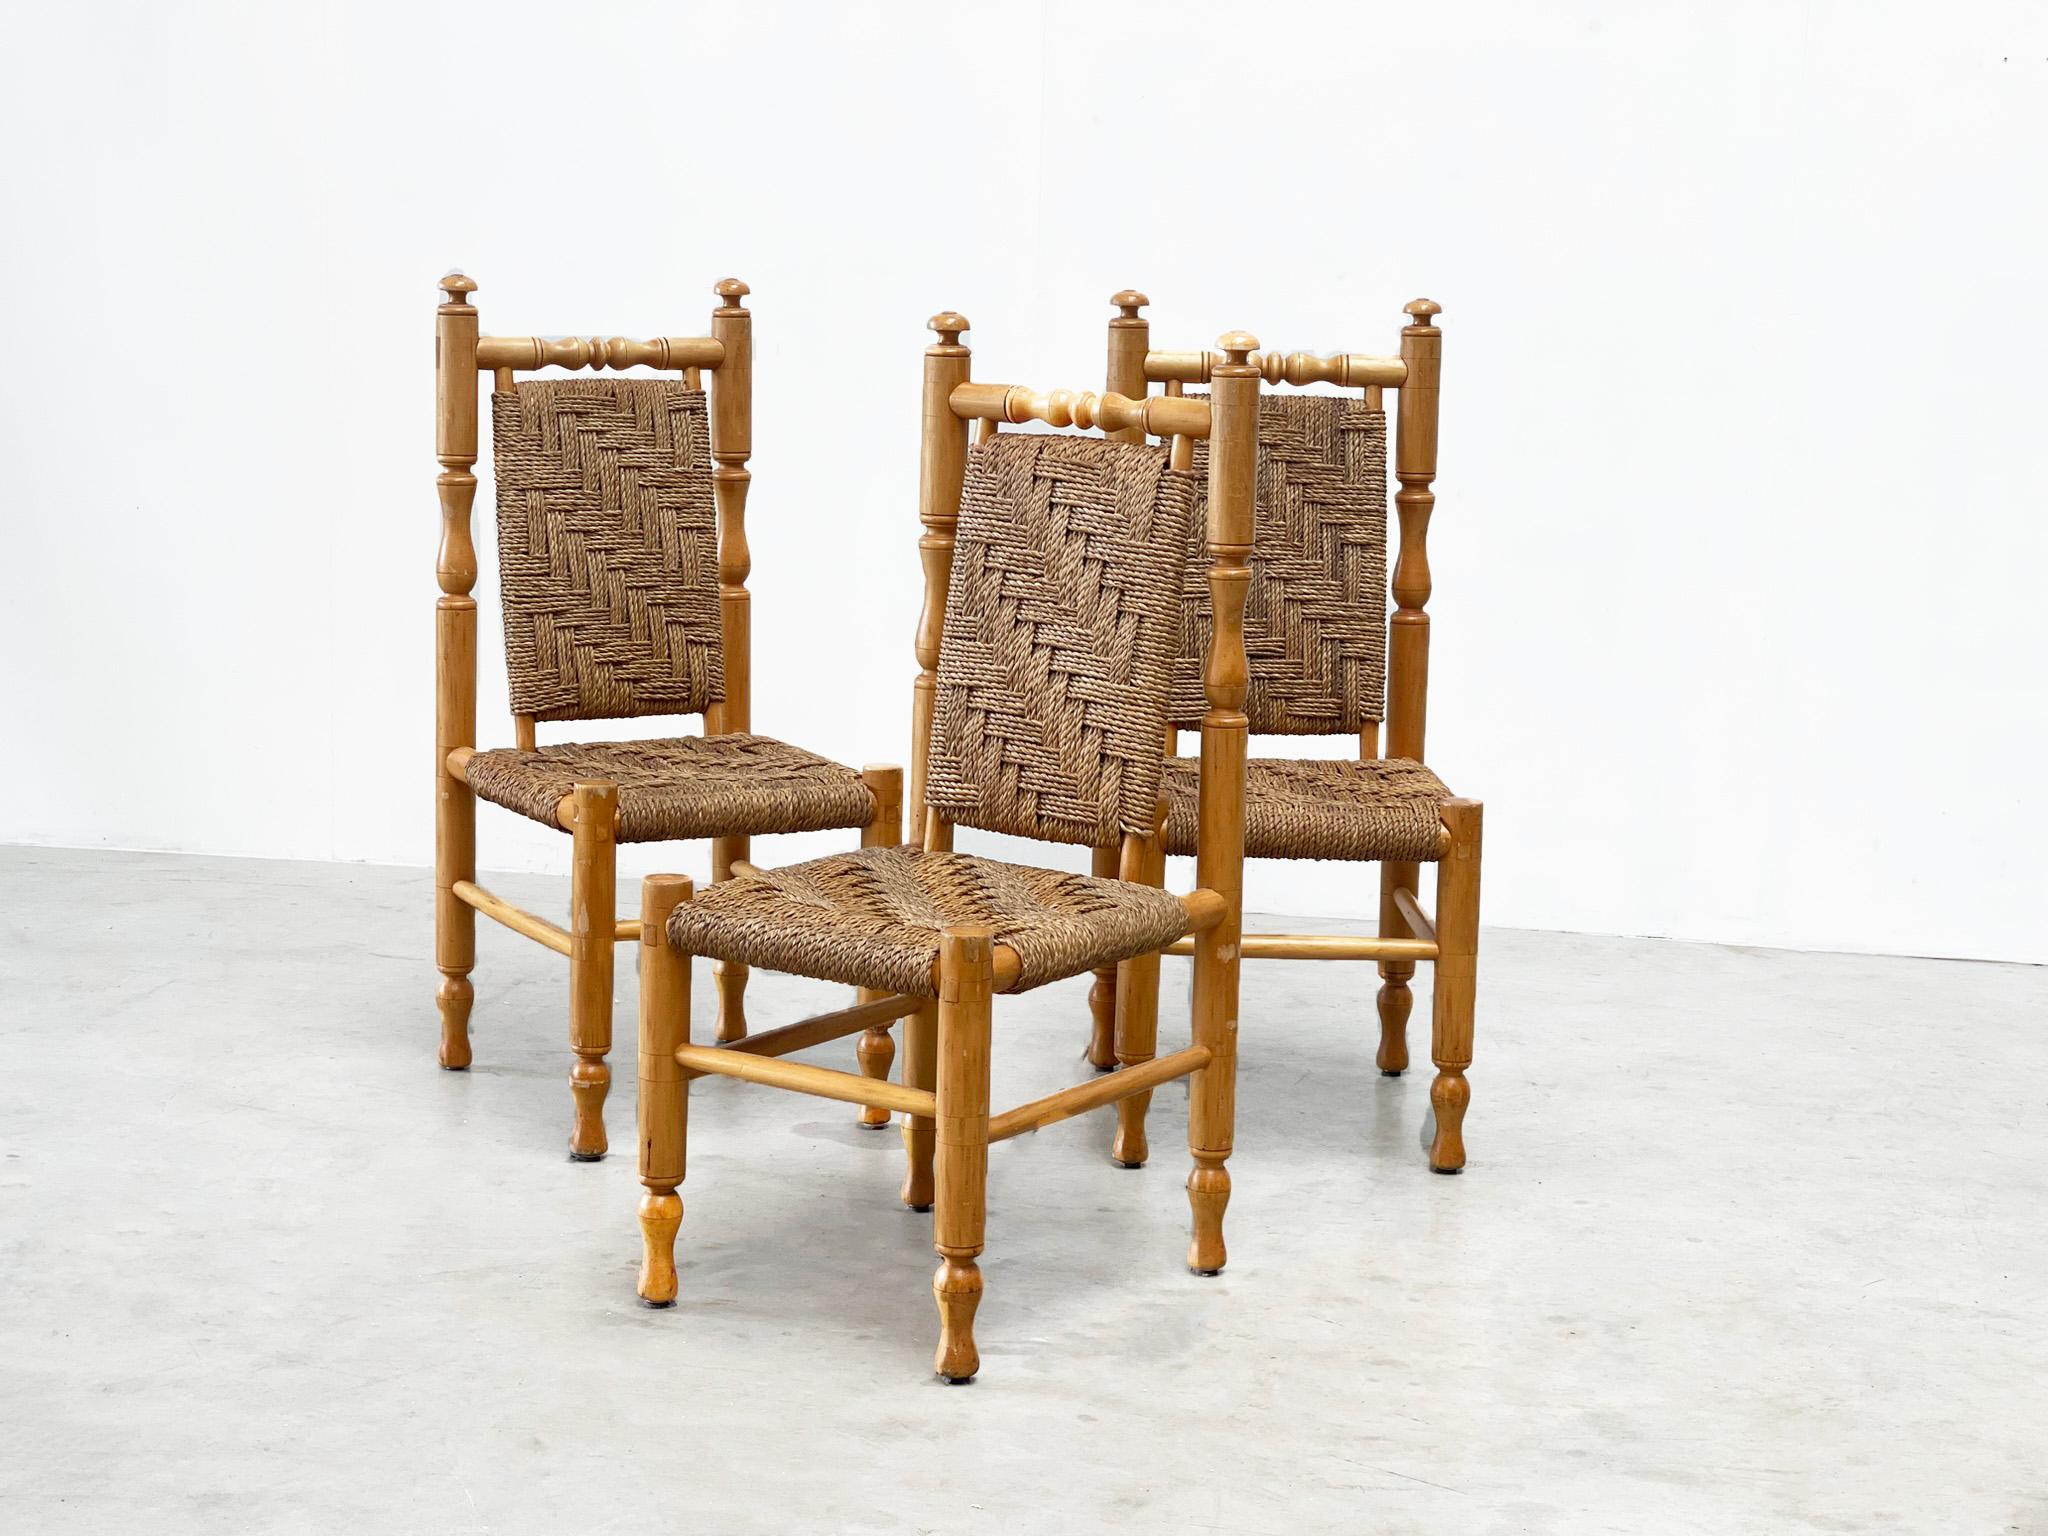 Satz von 3 Beistellstühlen / Esszimmerstühlen von Adrien Audoux & Frida Minet
Diese Stühle stammen von den berühmten französischen Designern Adrien Audoux & Frida Minet. Sie wurden in den 1970er Jahren entworfen und hergestellt. Die Stühle wurden in